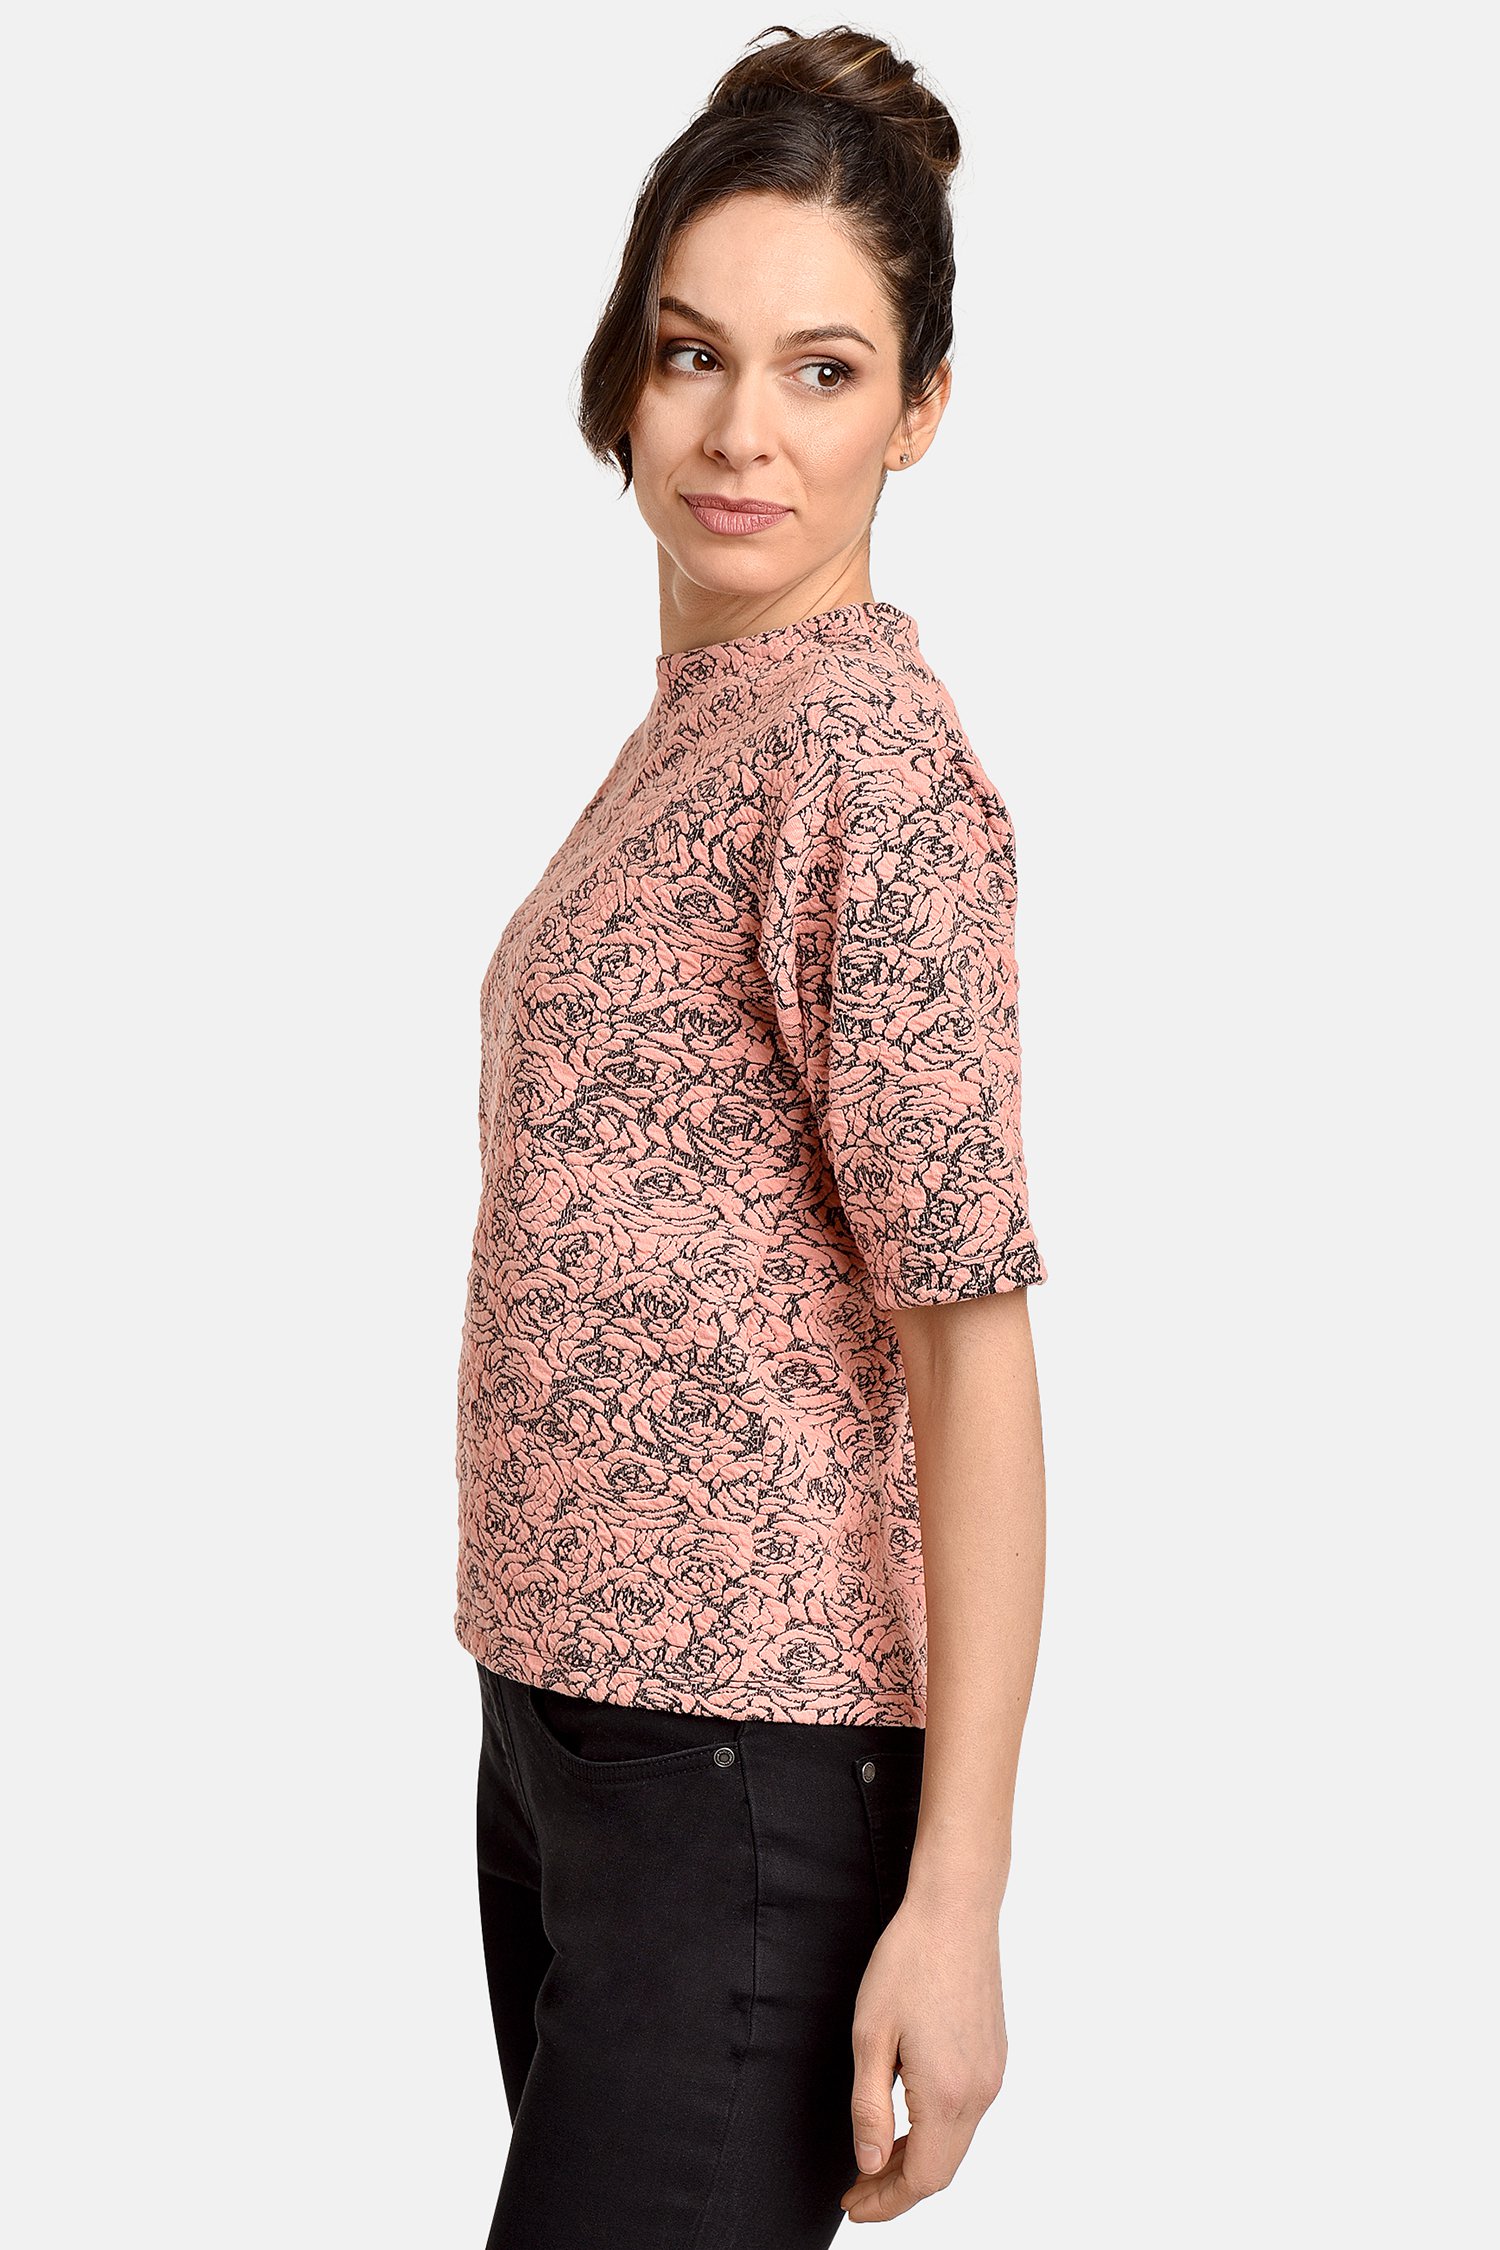 T-shirt in zwart en roze met bloemenprint van Bicalla voor Dames